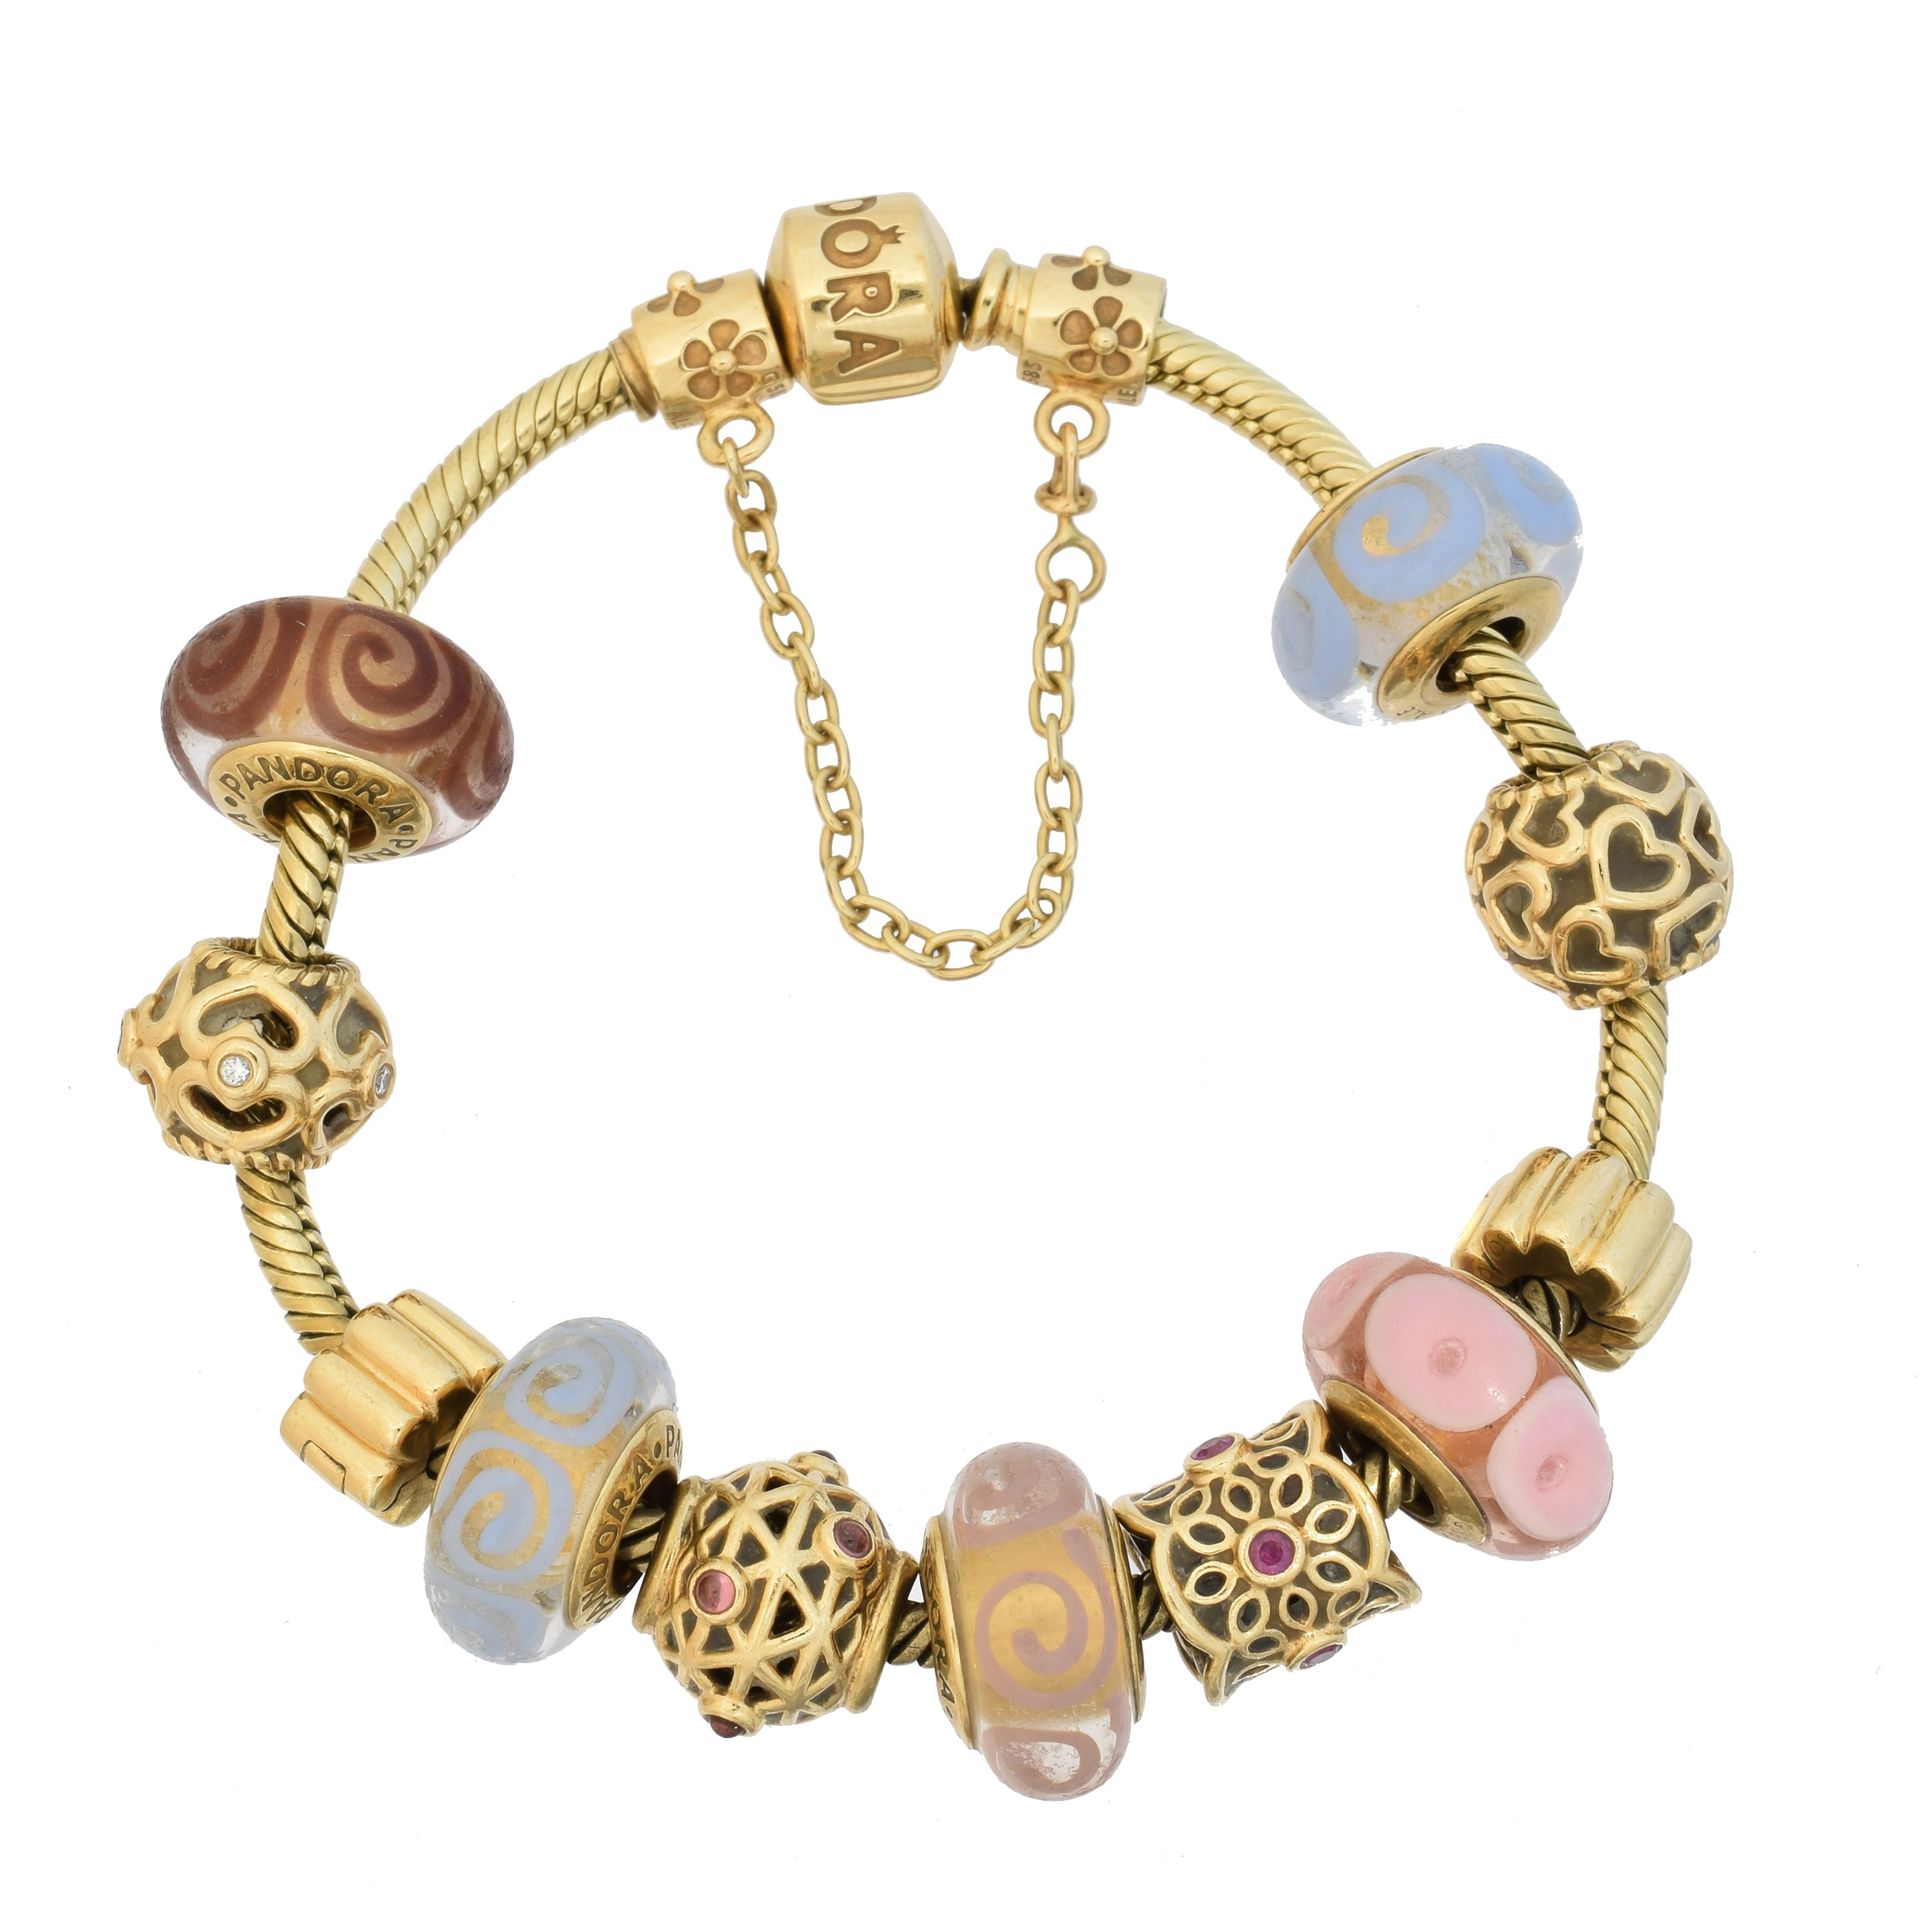 A 14ct gold Pandora charm bracelet, 
Ein Pandora-Armband aus 14 Karat Gold mit z&hellip;